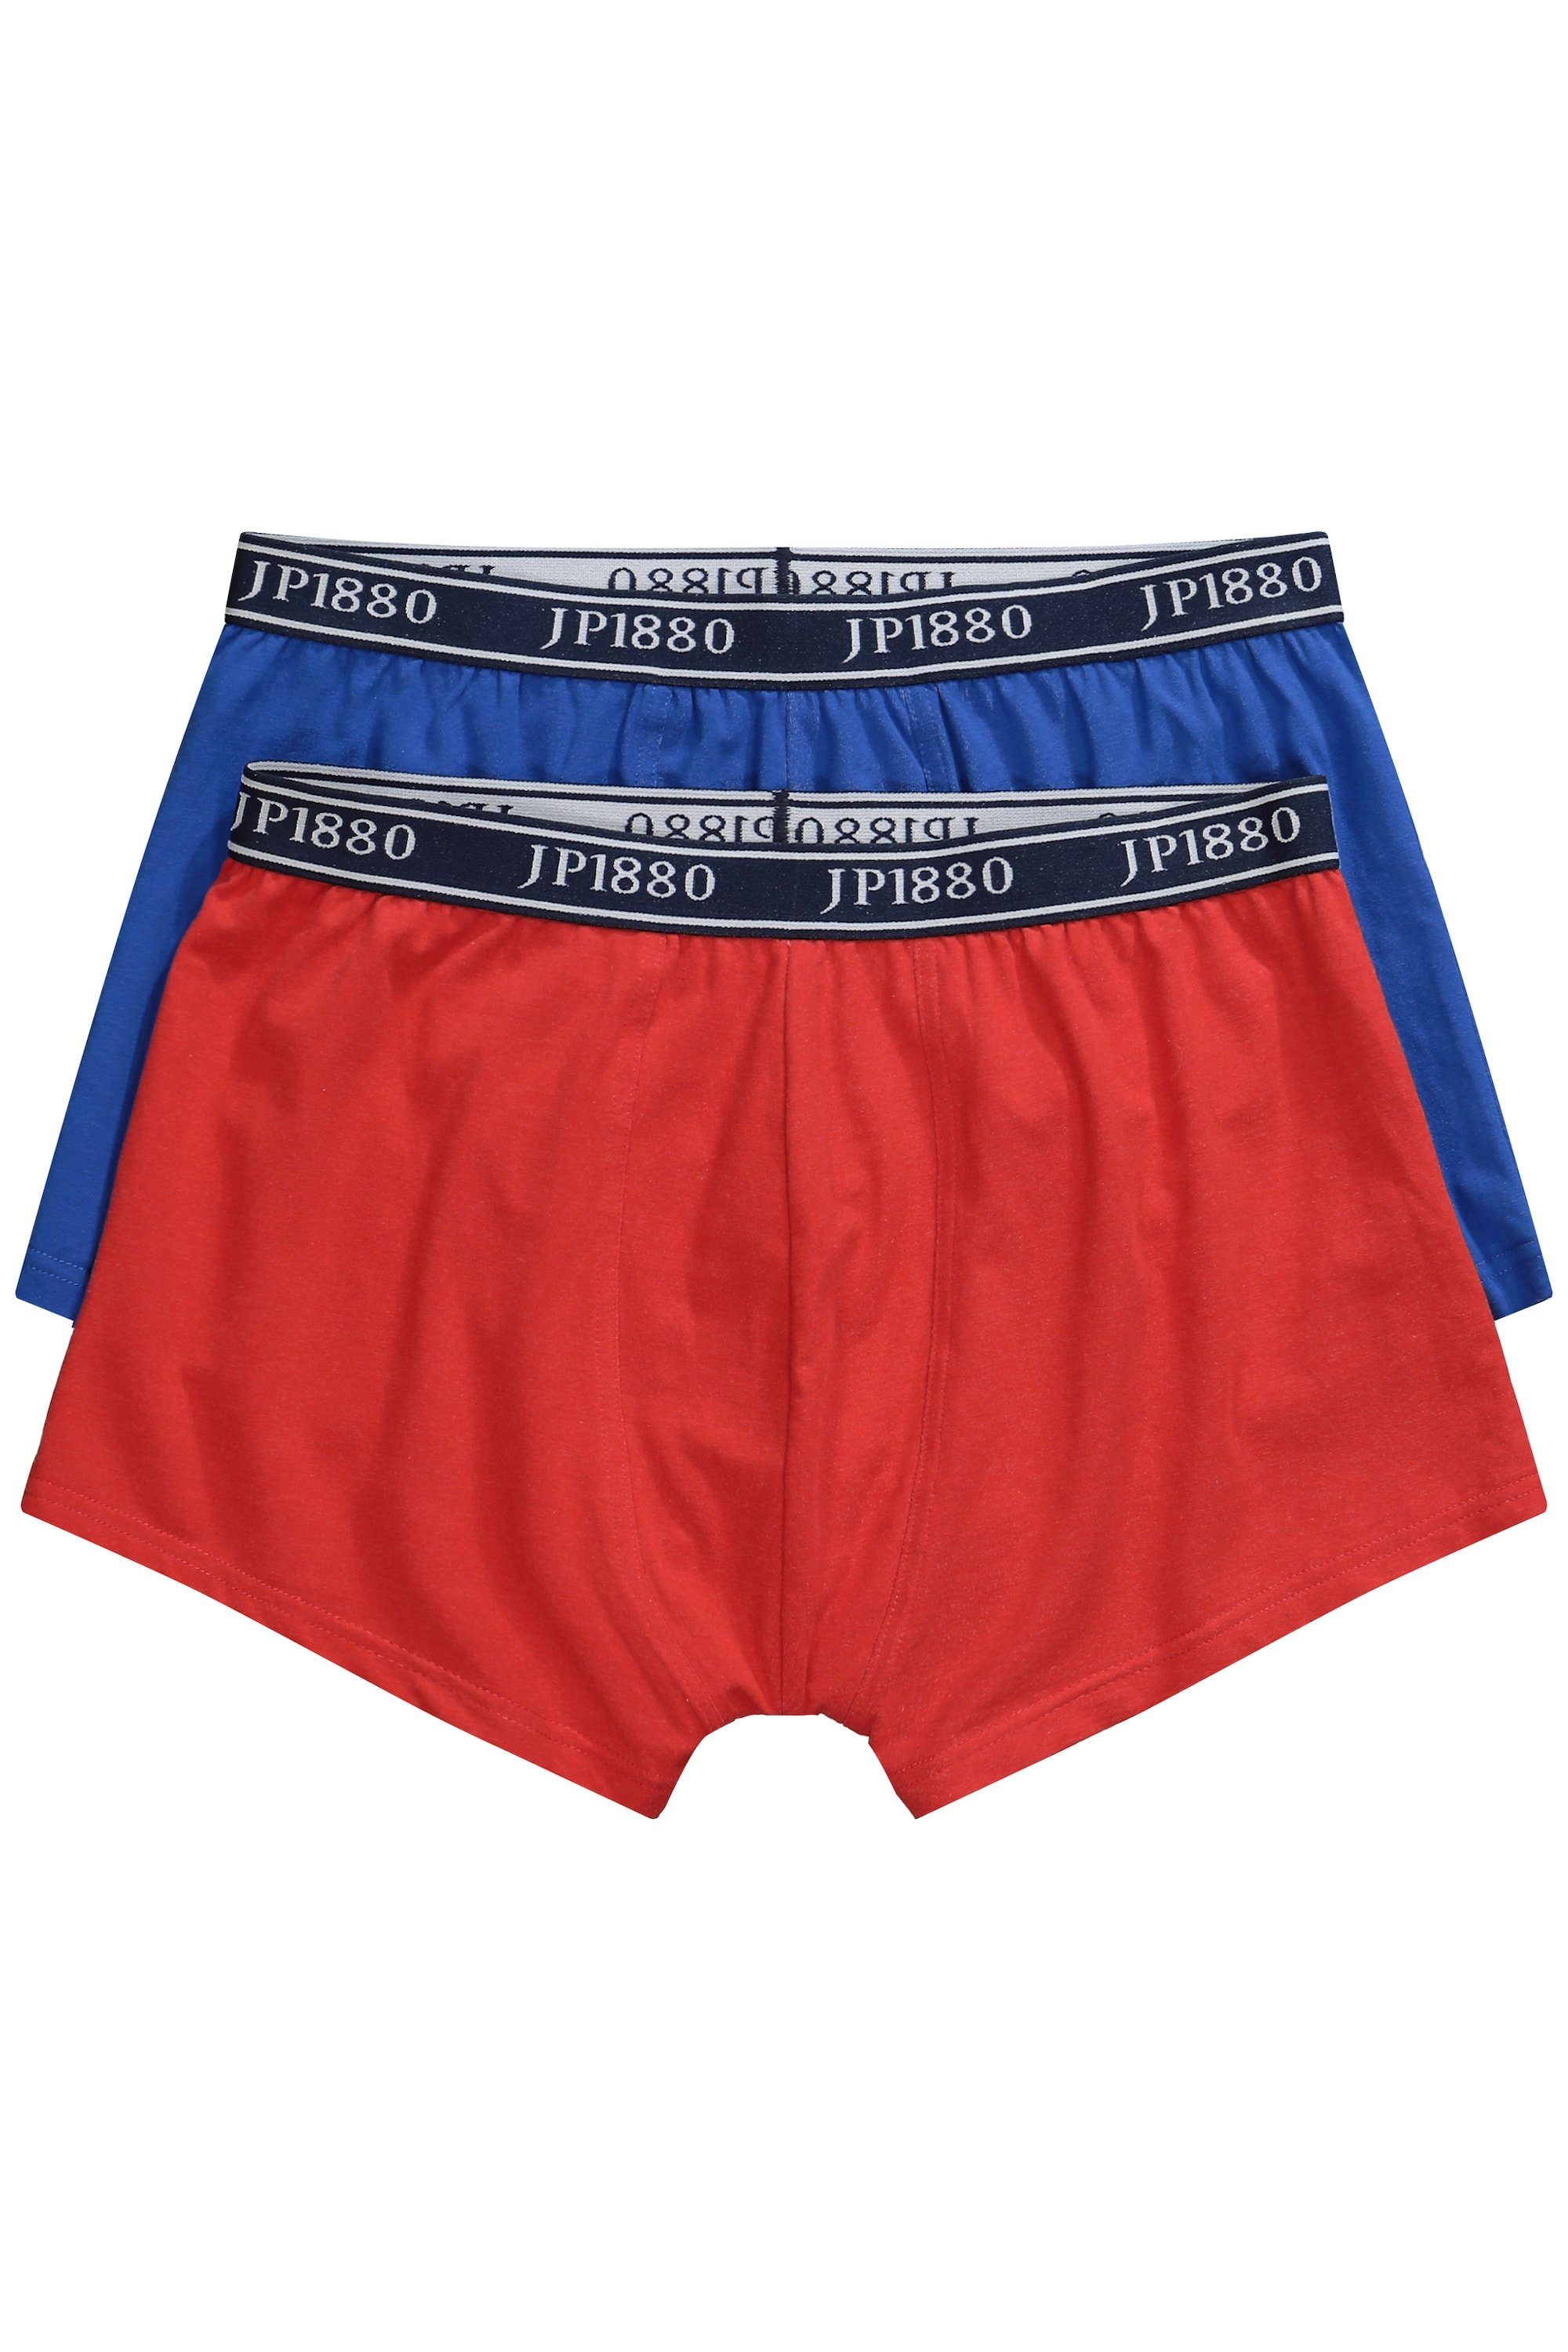 JP1880 Boxershorts Hip-Pants FLEXNAMIC® 2er-Pack Unterhose paprikarot